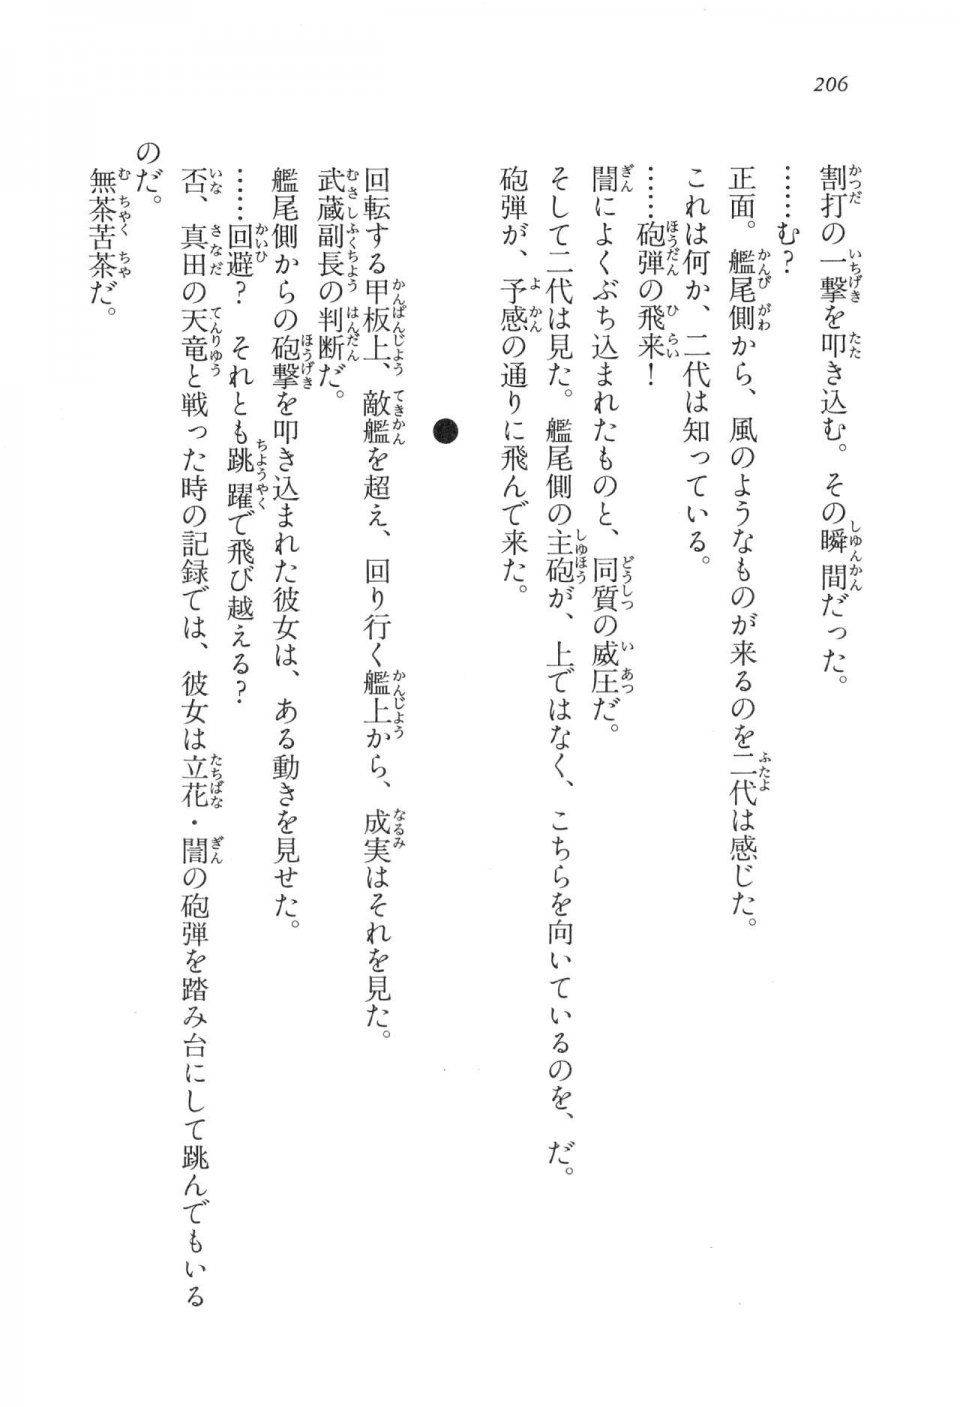 Kyoukai Senjou no Horizon LN Vol 17(7B) - Photo #206